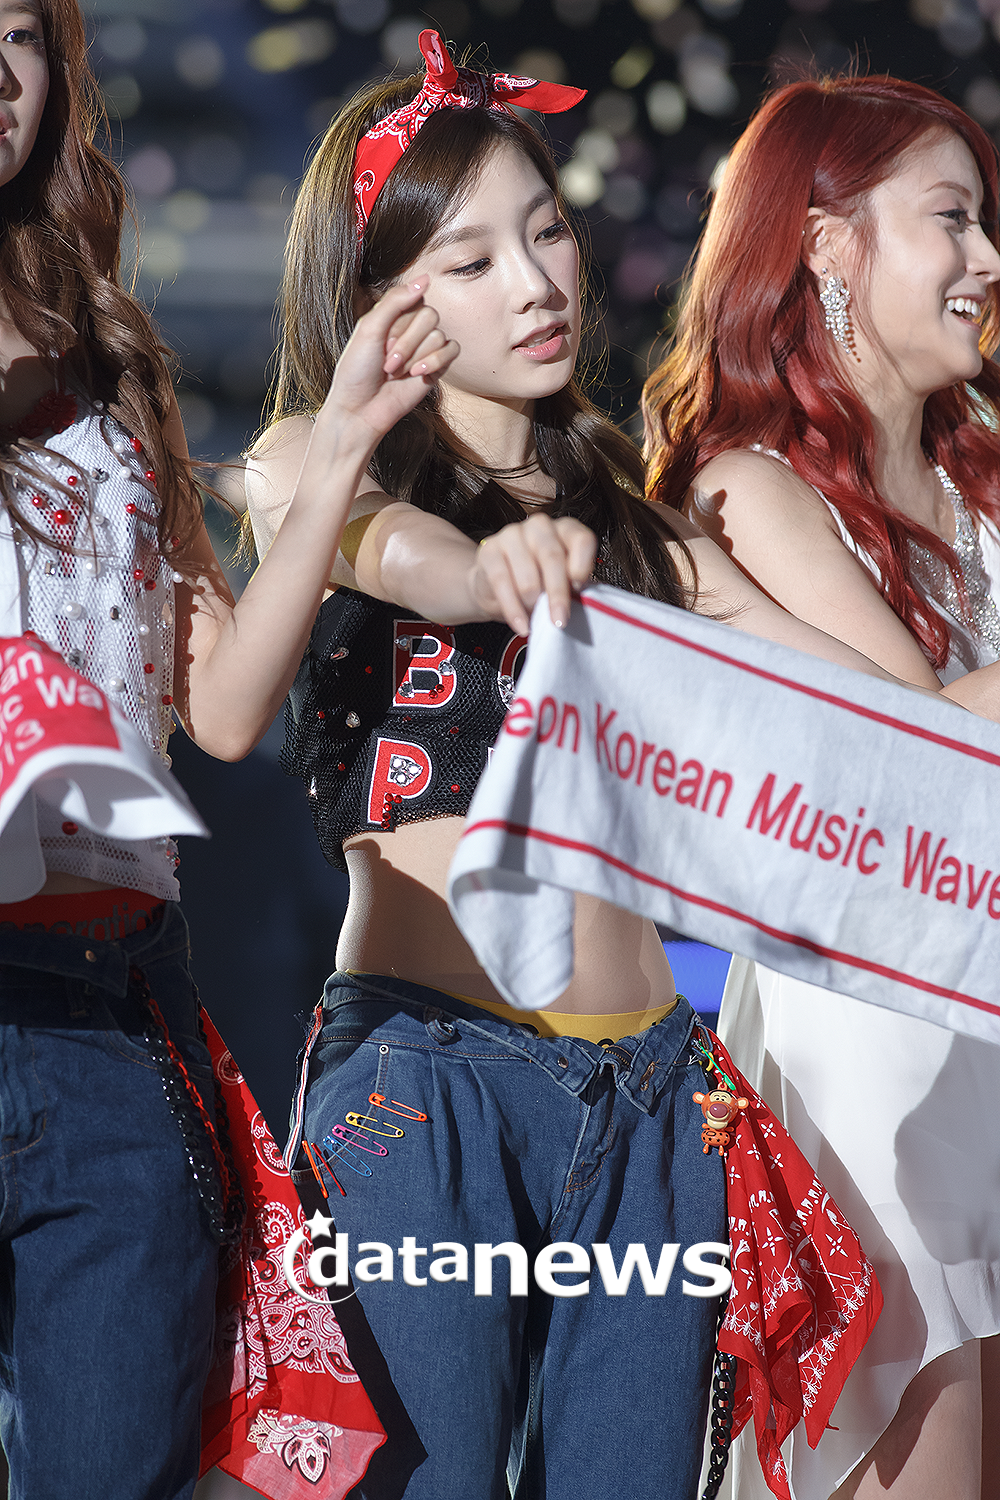 [PIC][01-09-2013]Hình ảnh mới nhất từ "Incheon Korean Music Wave 2013" của SNSD và MC YulTi vào tối nay - Page 2 214D324C52238E2A1857A3